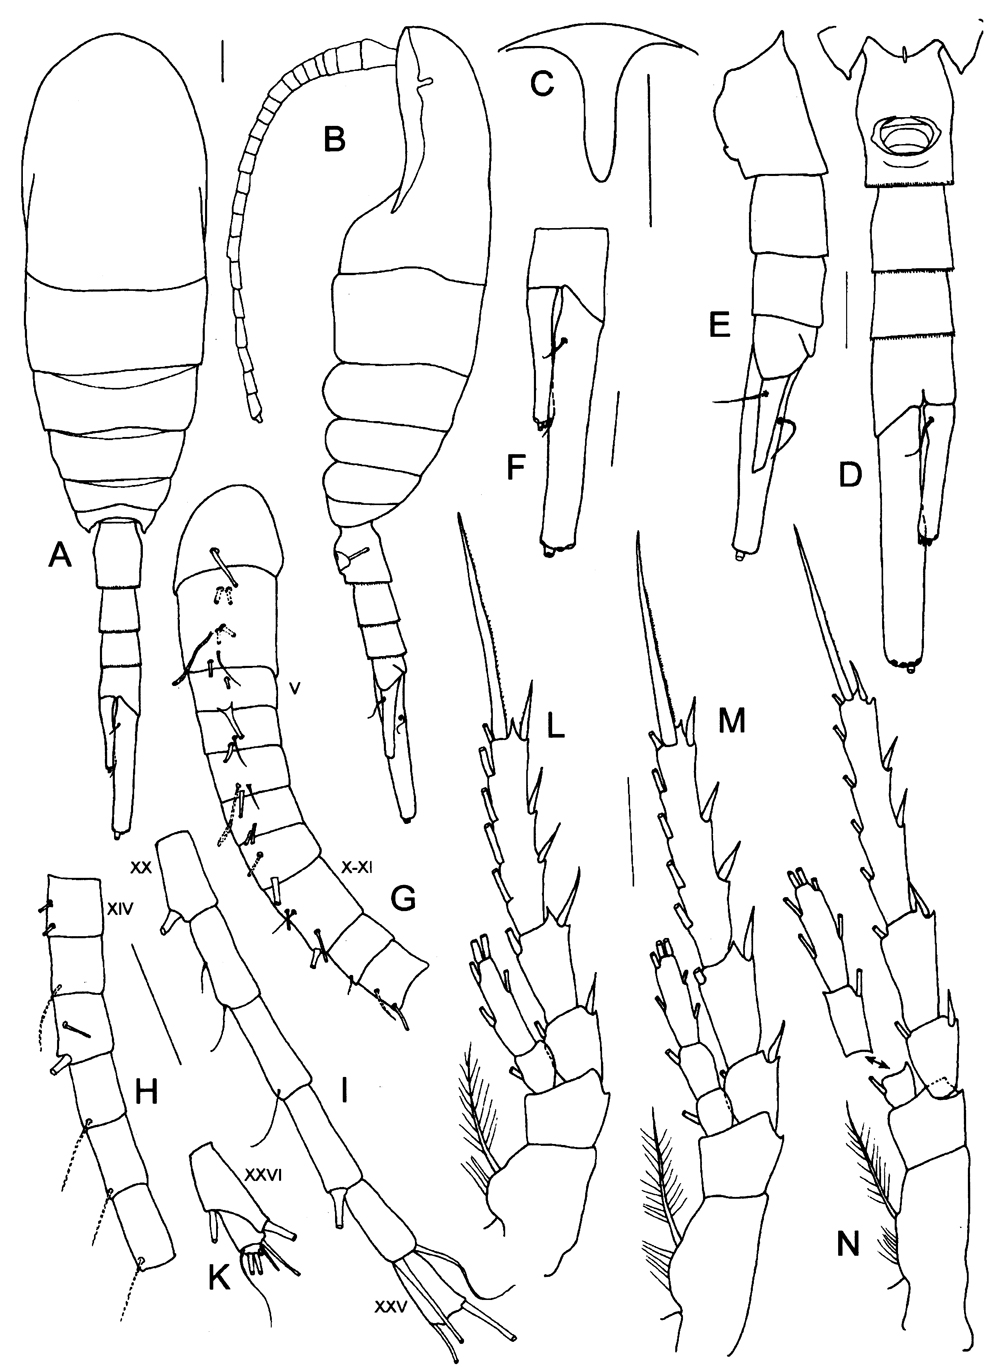 Espce Caudacalanus vicinus - Planche 1 de figures morphologiques